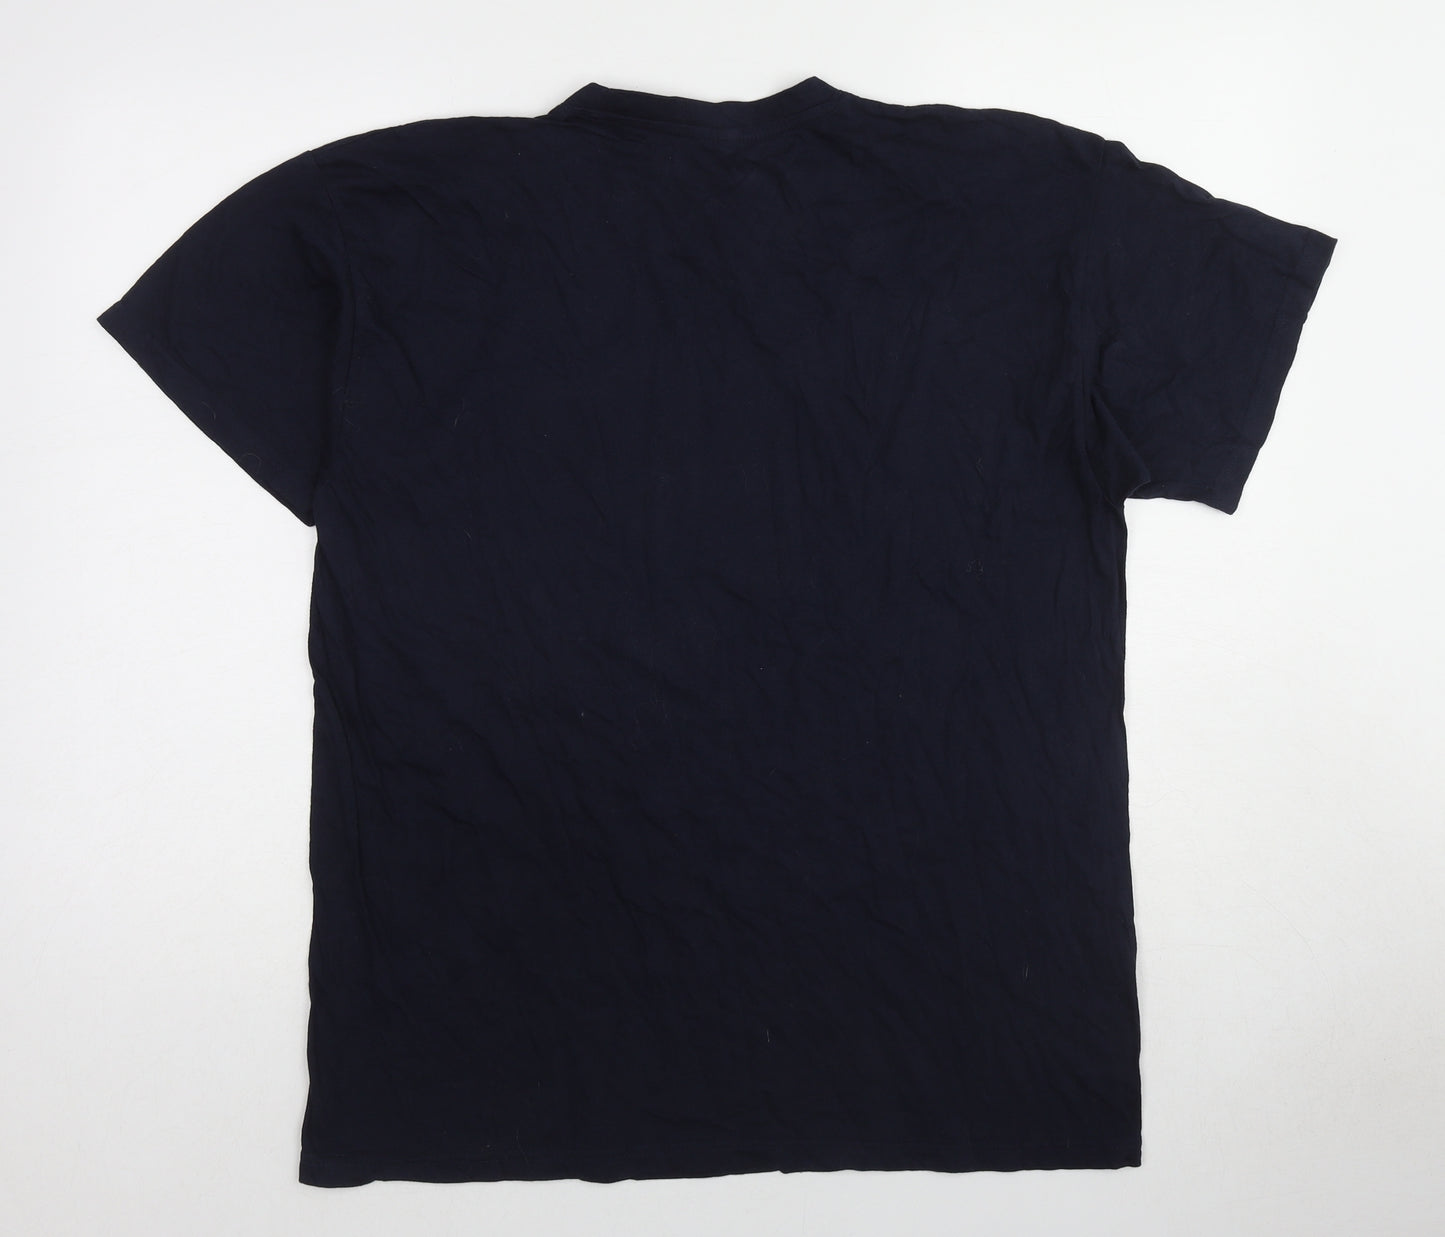 B&C Mens Blue Cotton T-Shirt Size L Round Neck - Applied Nutrition